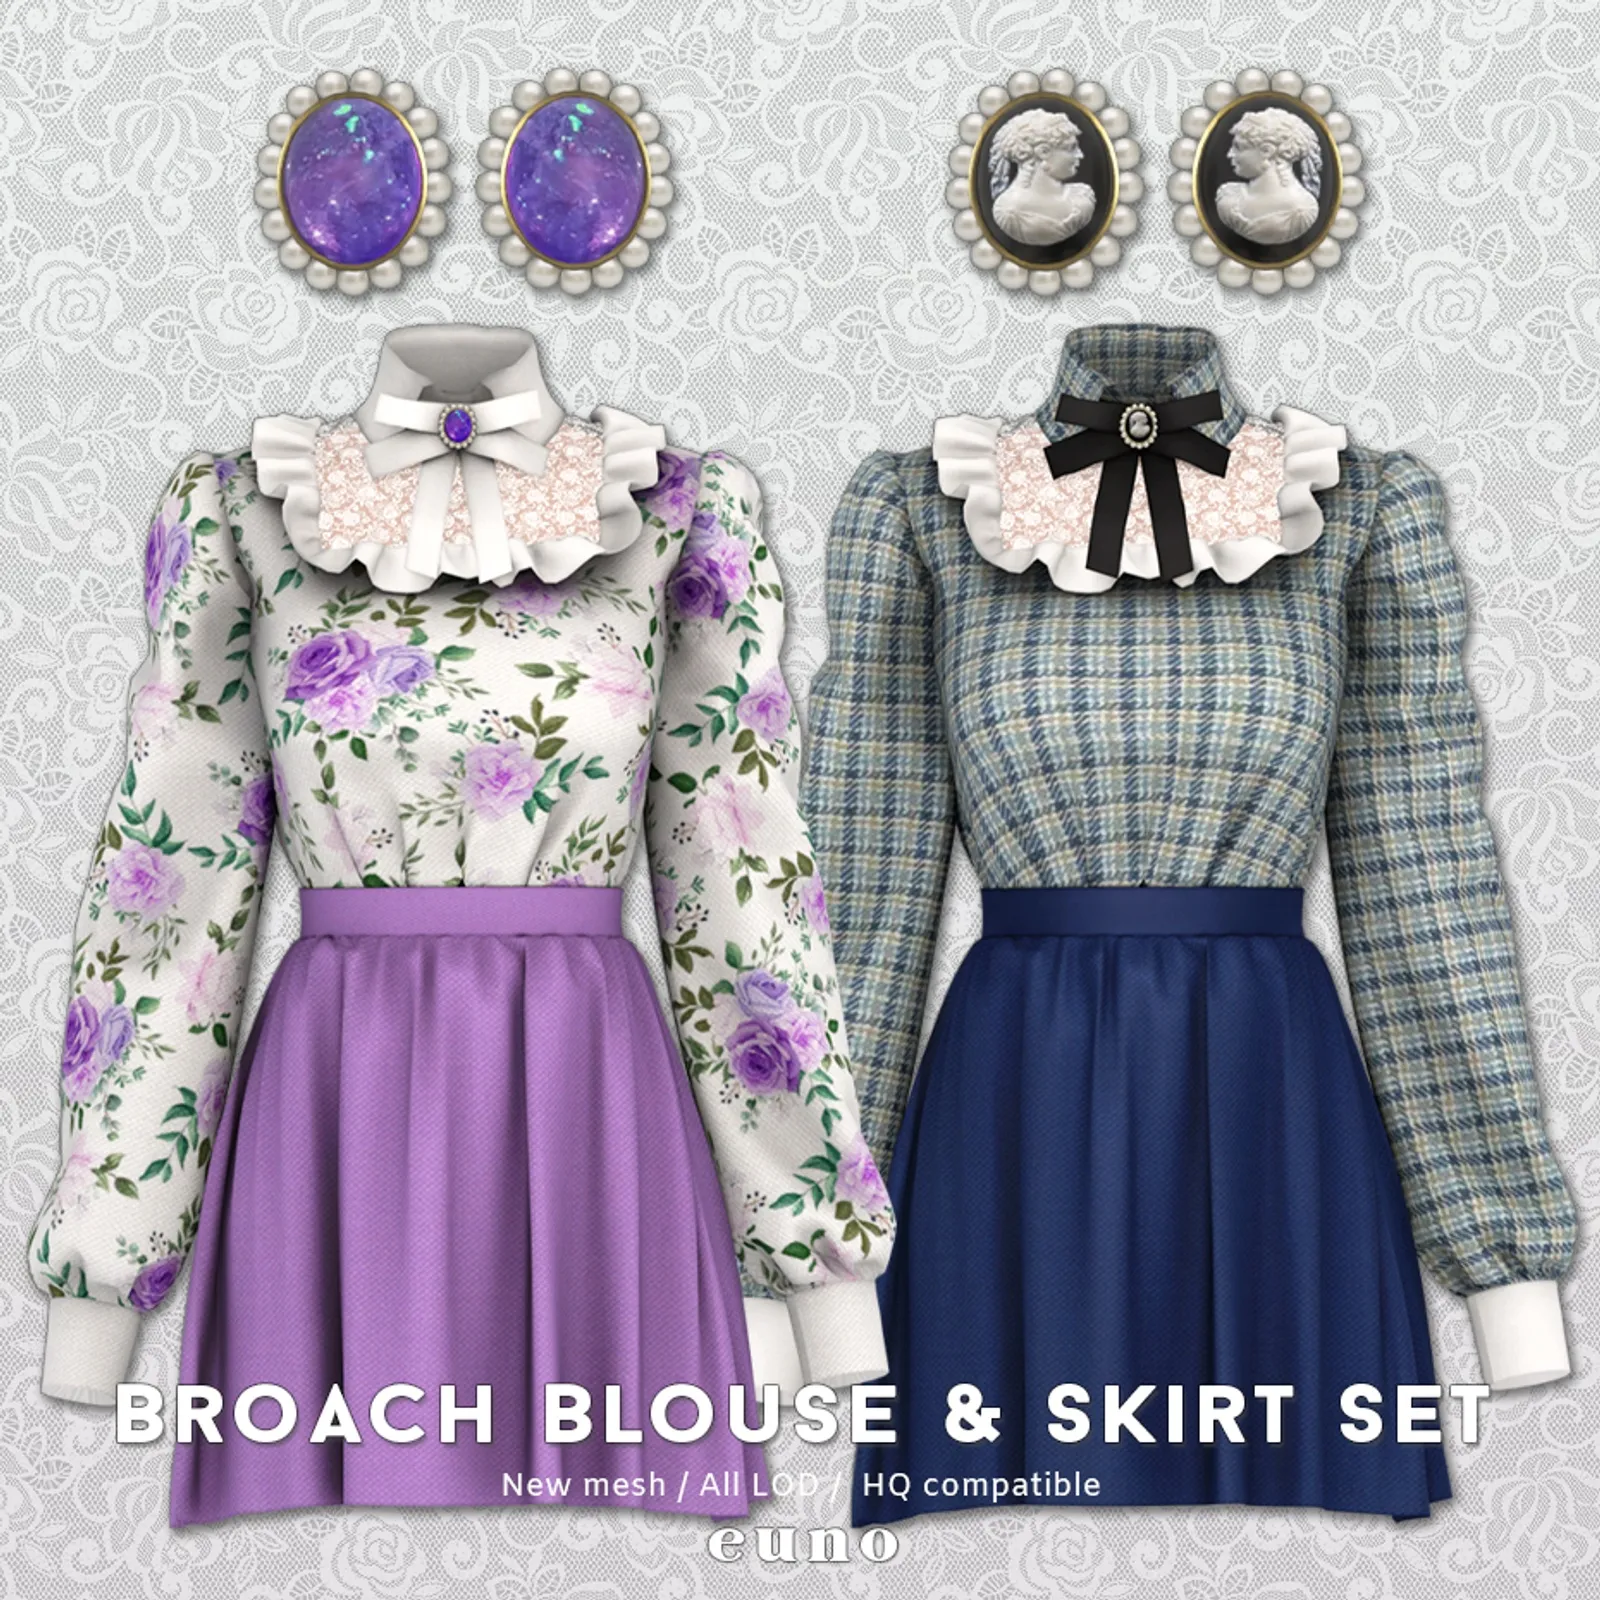 Broach Blouse & Skirt Set